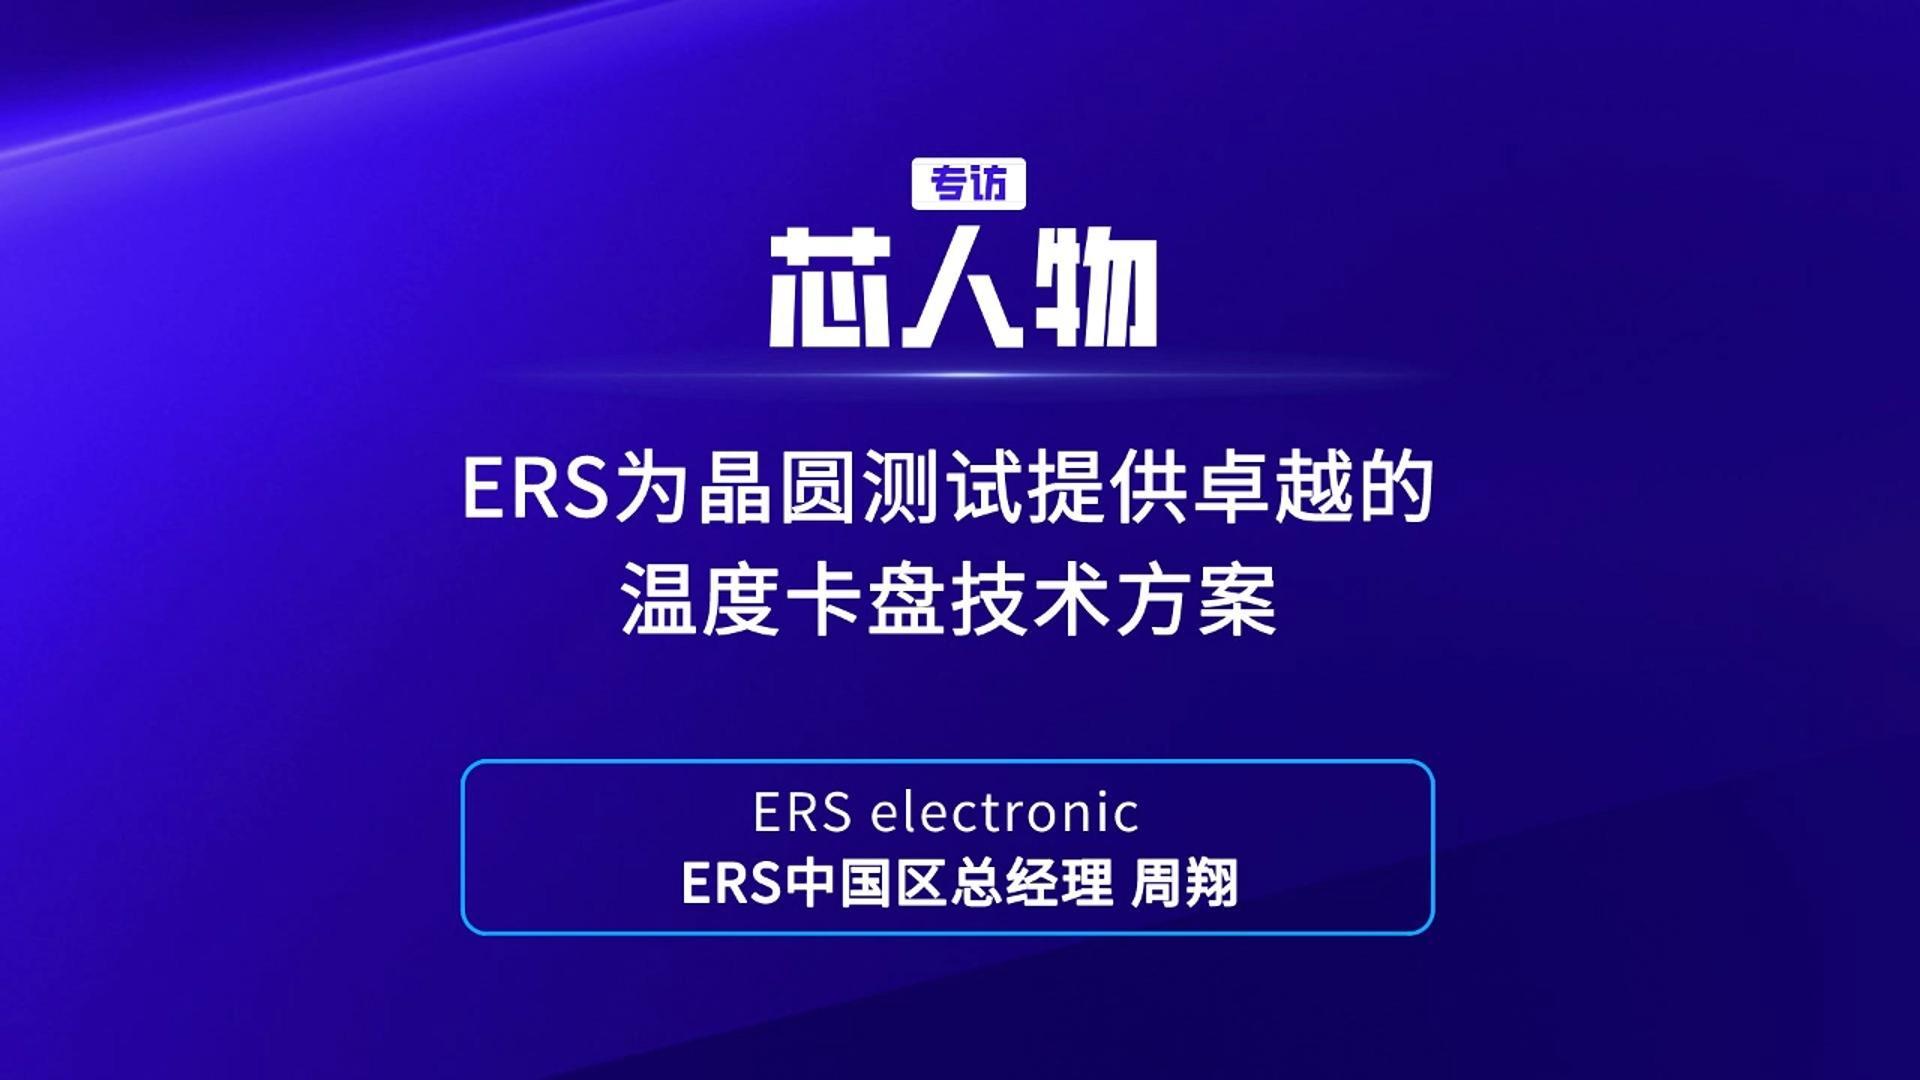 【芯人物】ERS electronicERS中国区总经理 周翔：ERS为晶圆测试提供卓越的温度卡盘技术方案